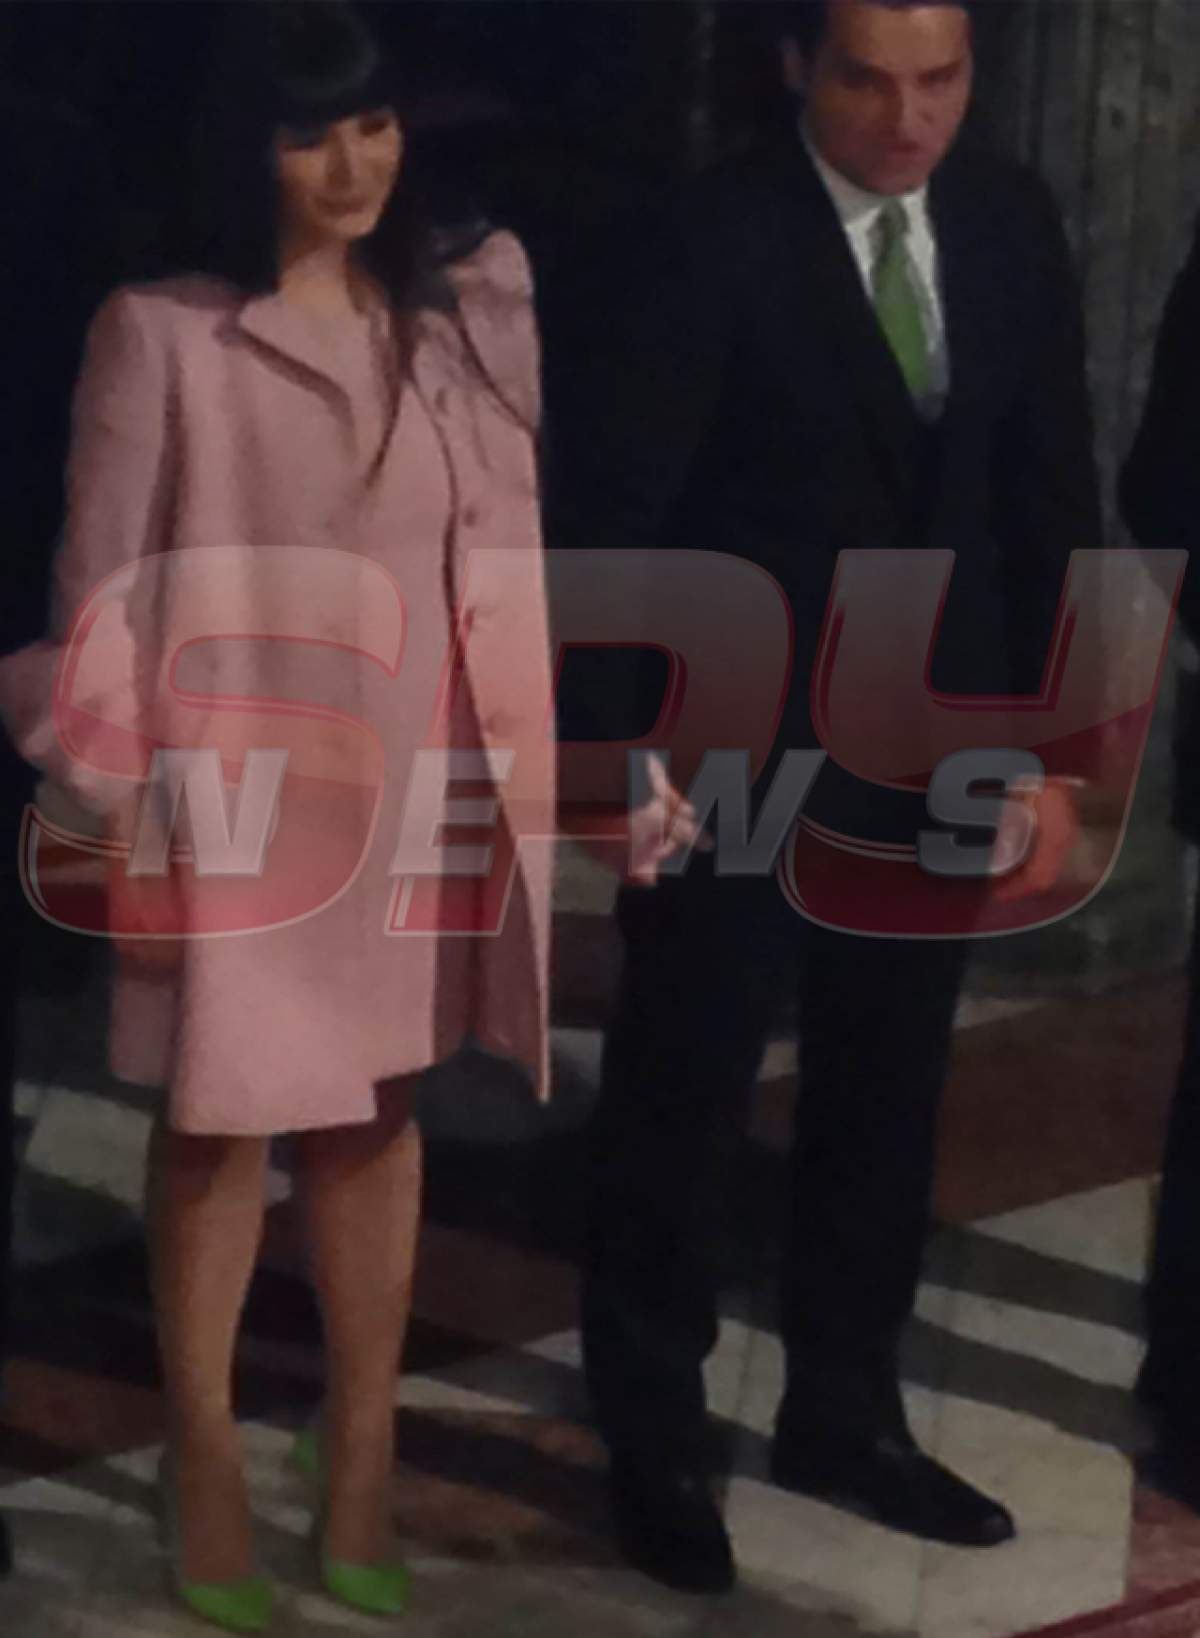 Mezina preşedintelui, atentă la detalii. Elena Băsescu şi-a asortat pantofii cu cravata soţului